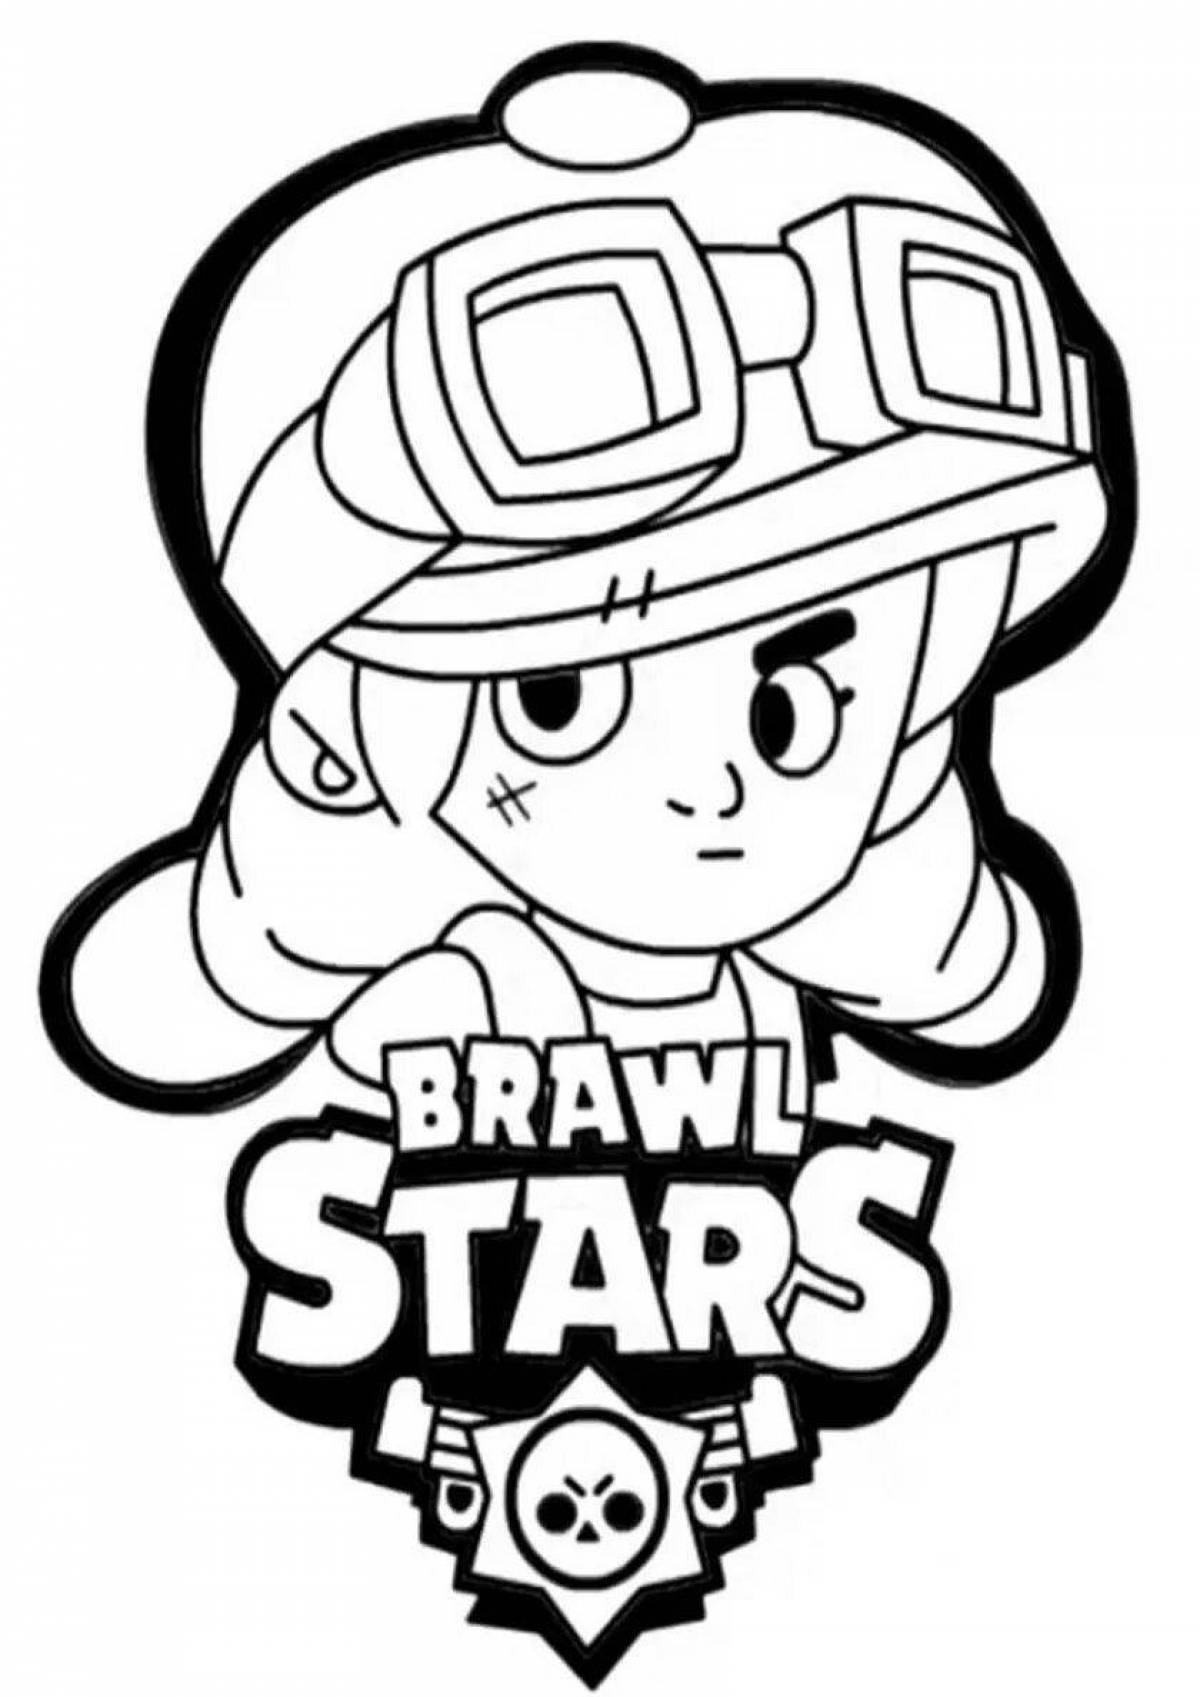 Bravo stars jessy #6